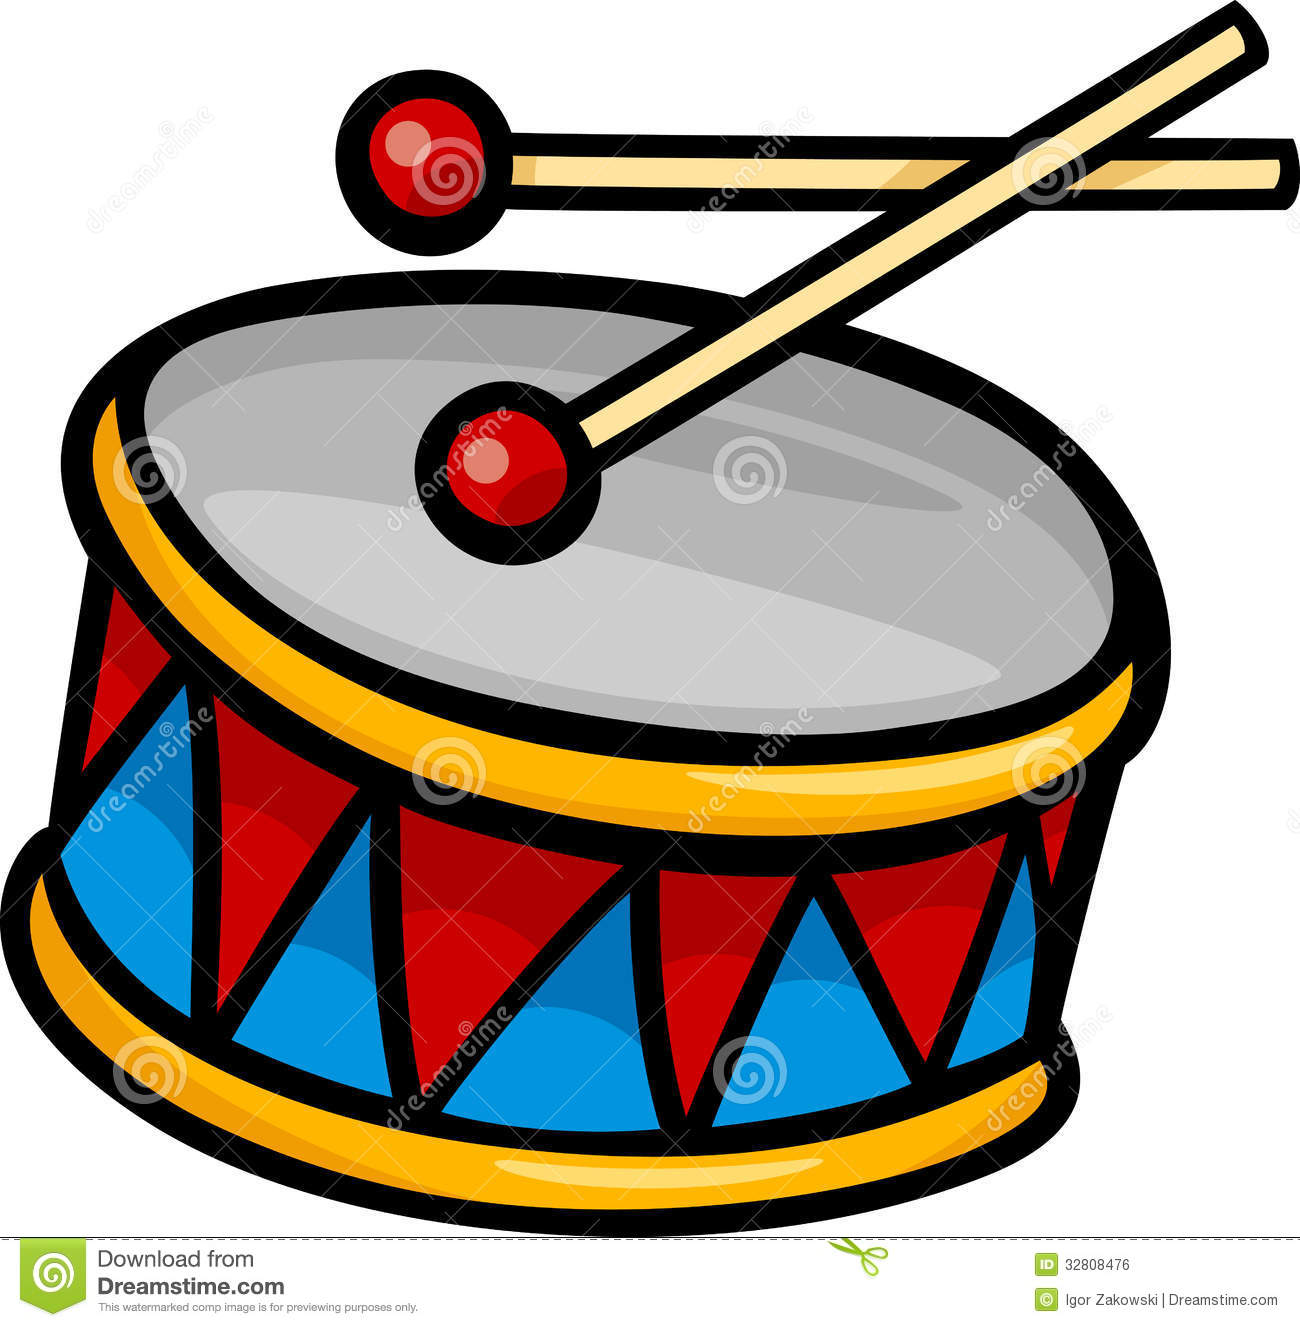 Snare Drum Clipart Black And White Drum Clip Art Drum Clip Art Cartoon